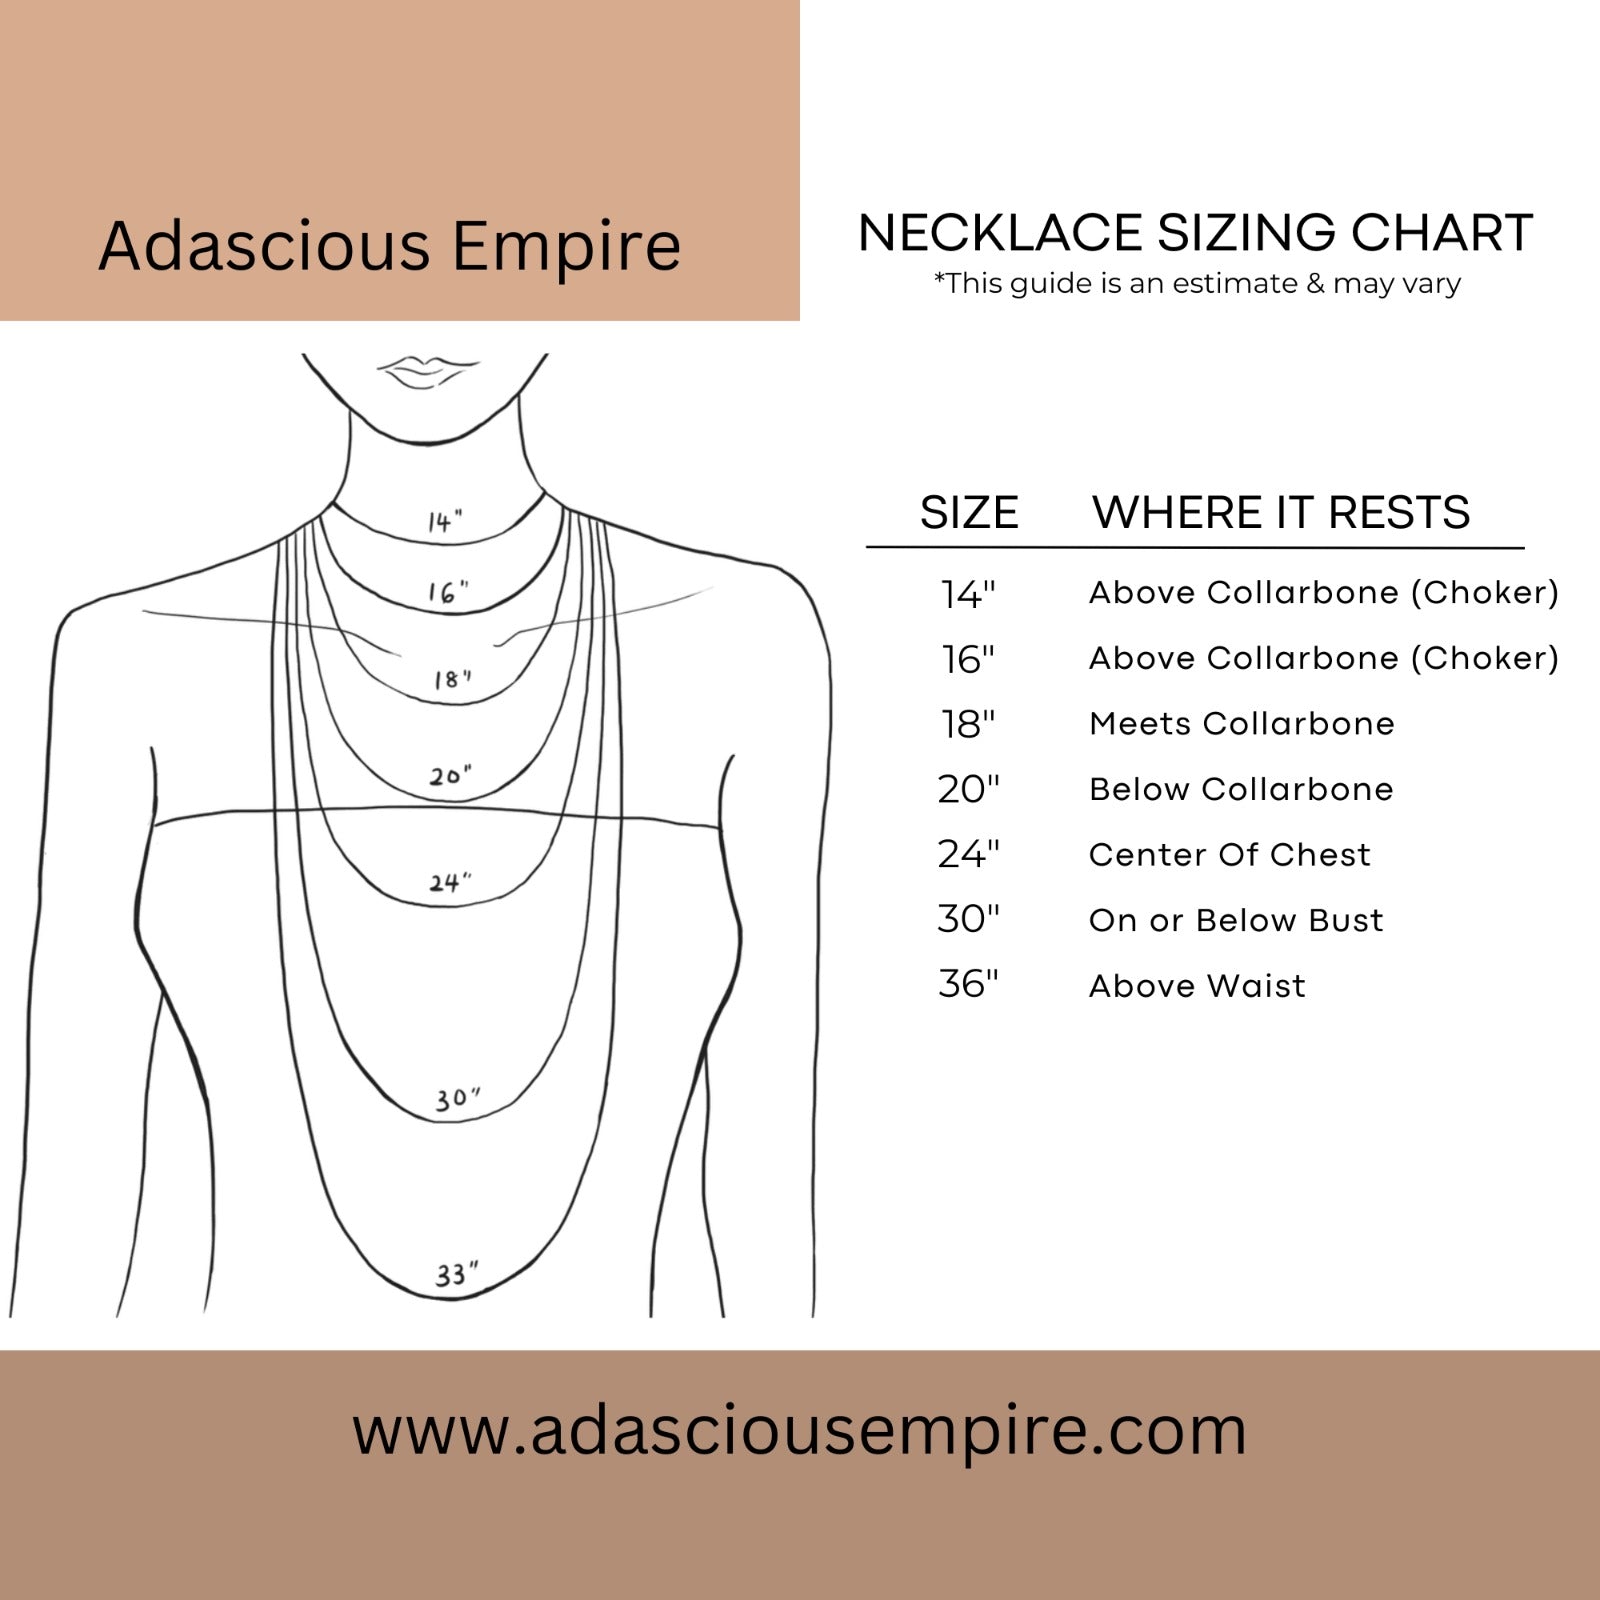 Adascious Empire